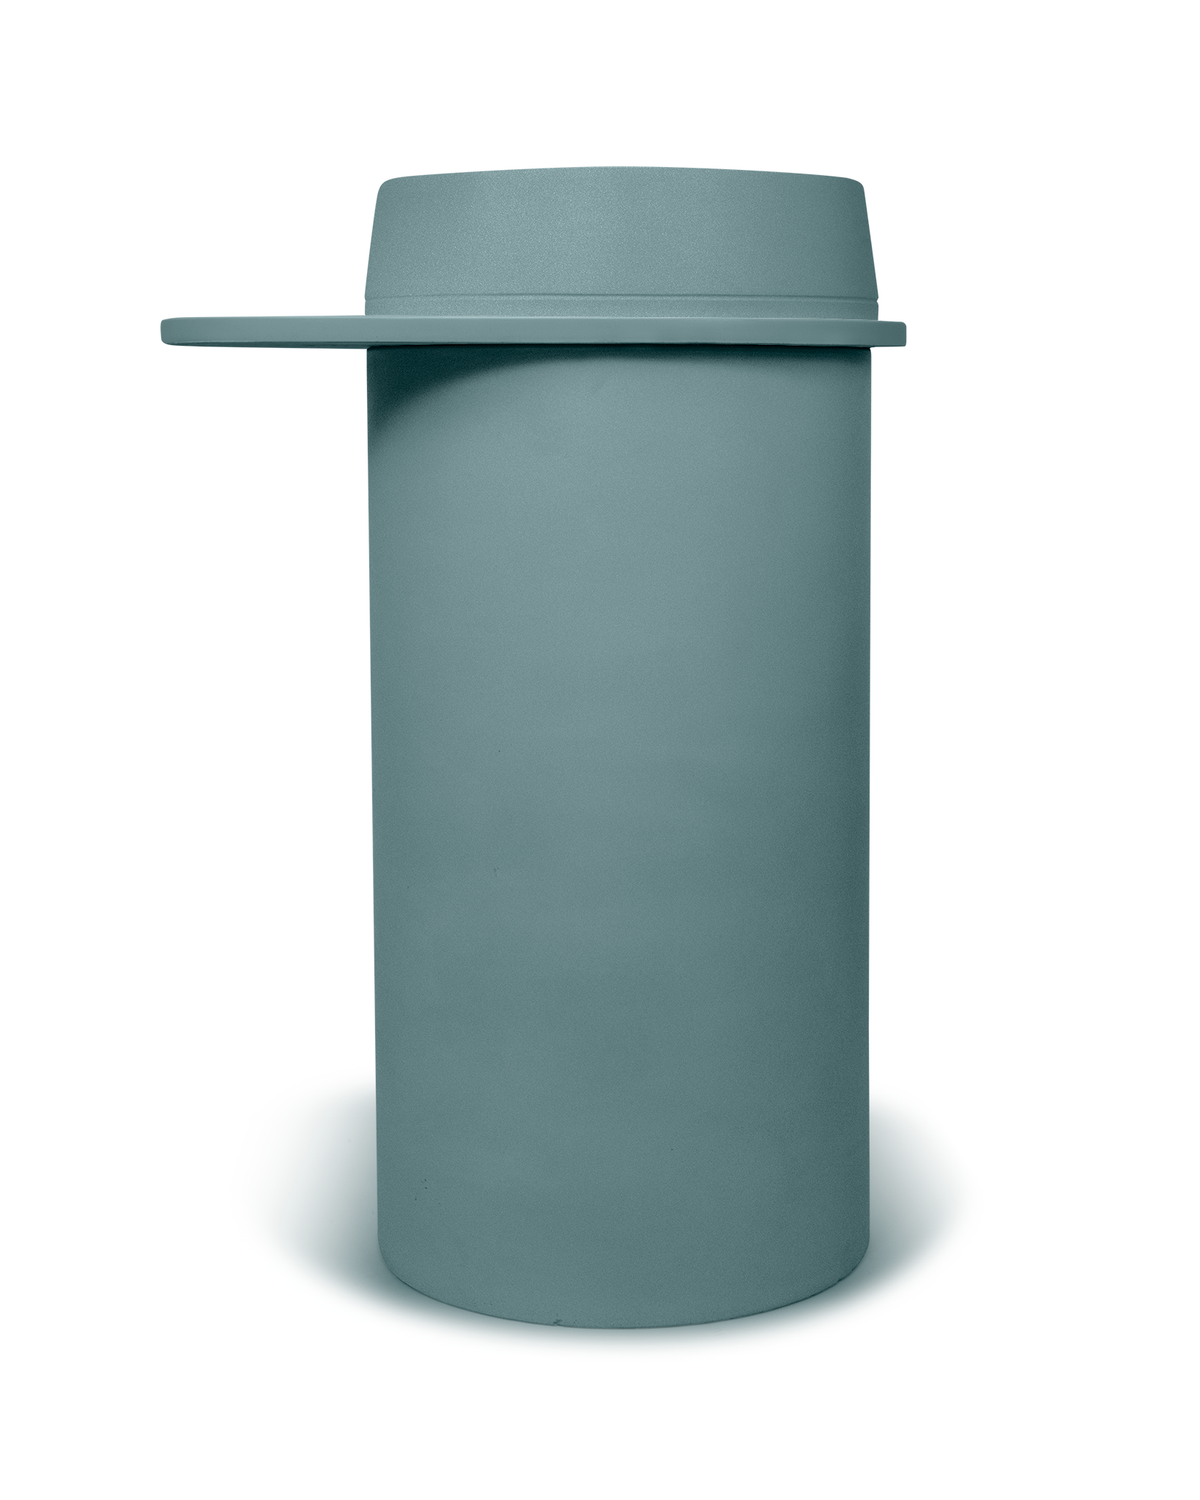 Cylinder - Funl Basin (Rowboat)